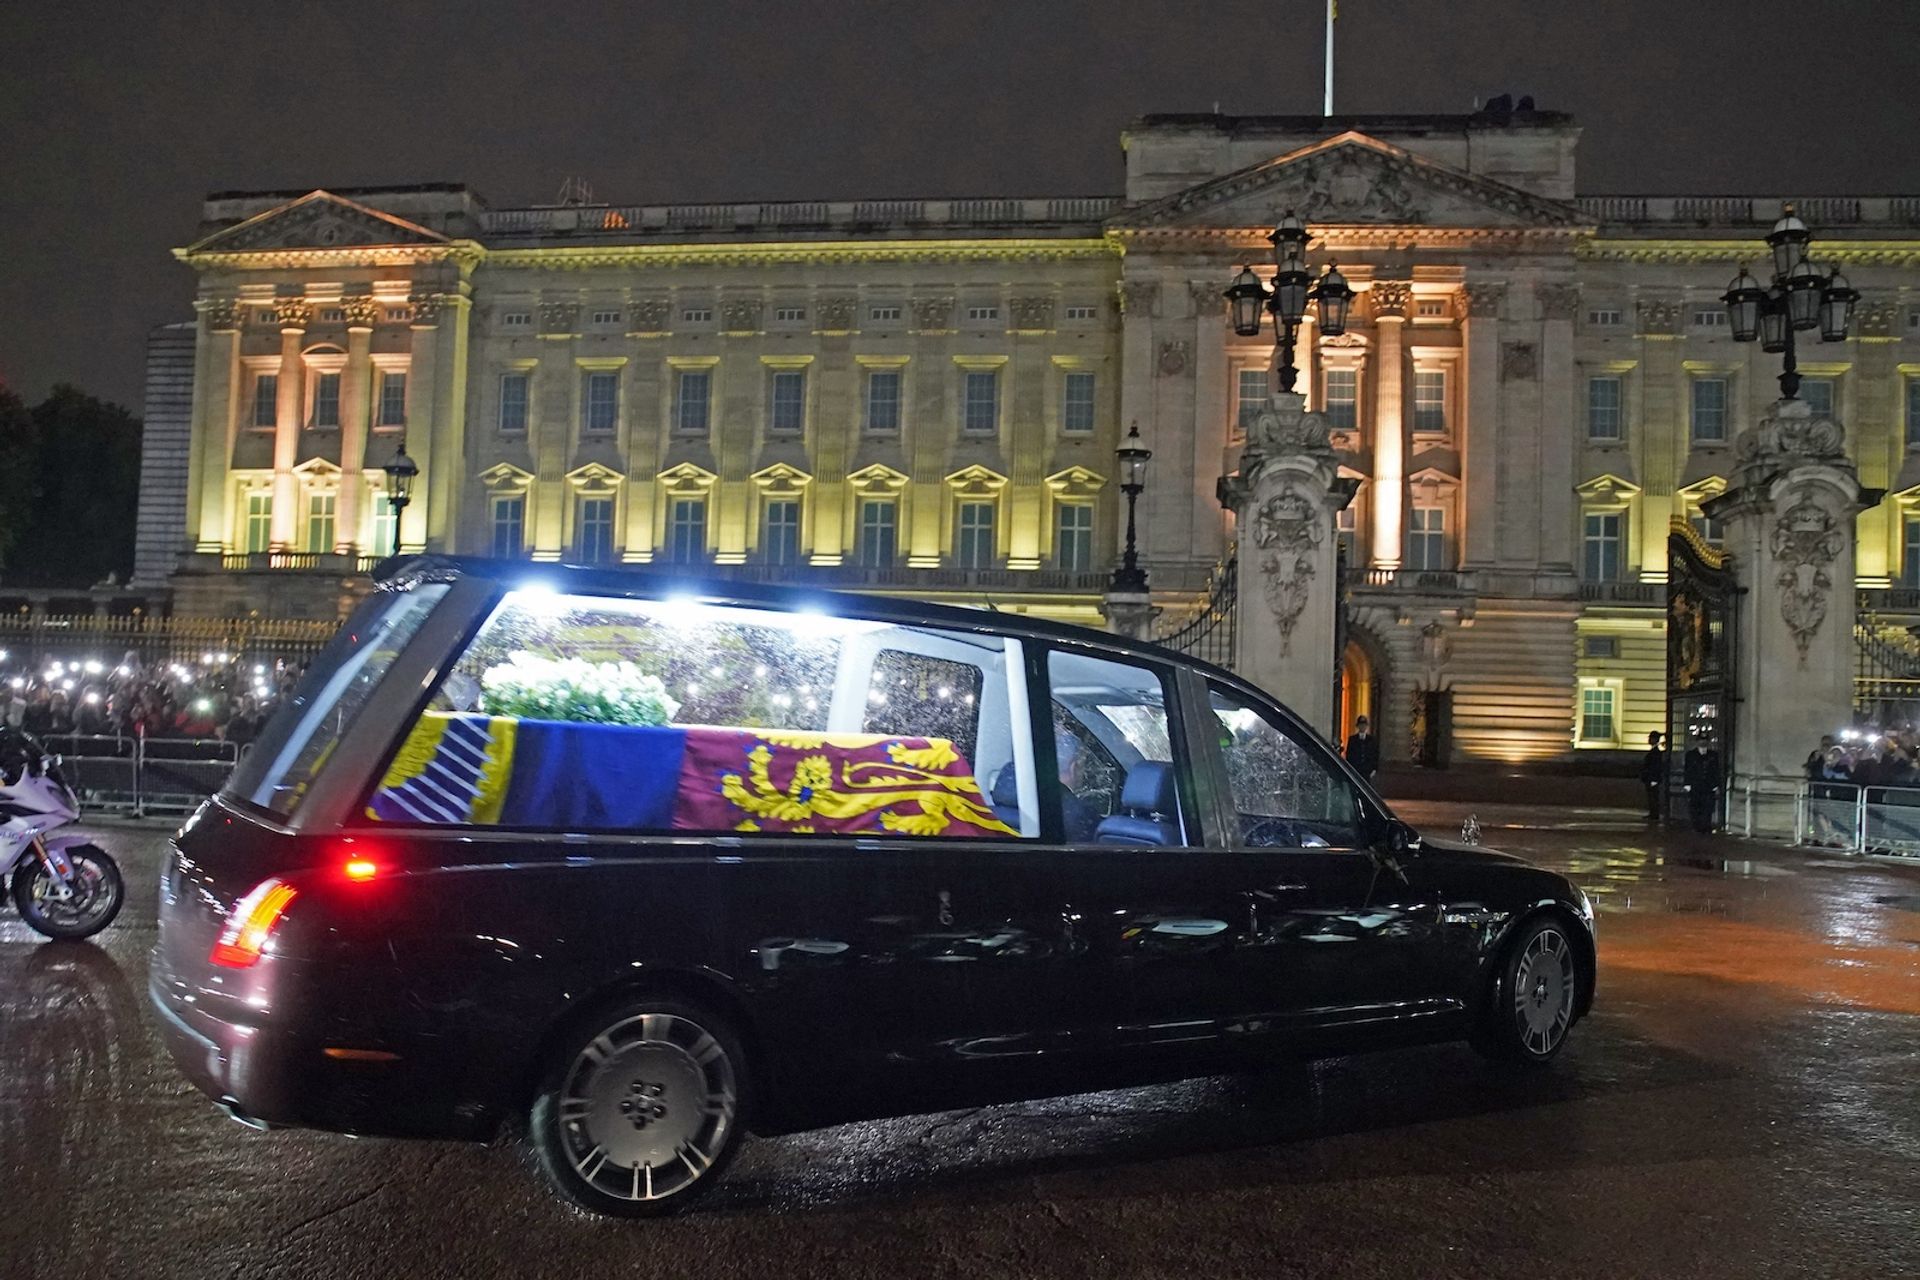 Aankomst-lijkauto-koningin-Elizabeth-Buckingham-Palace